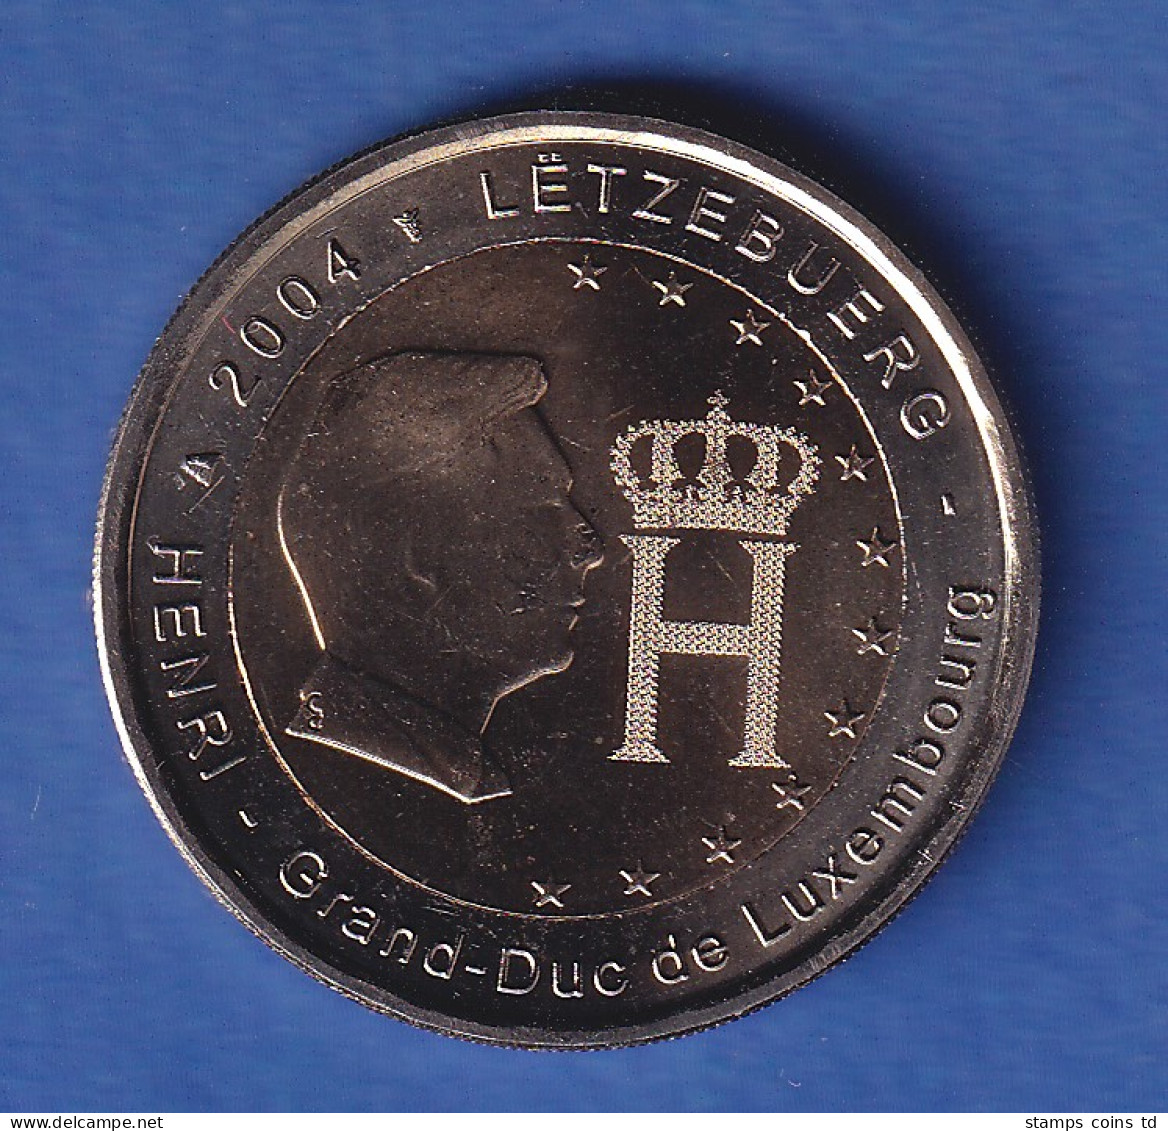 Luxemburg 2004 2-Euro-Sondermünze Henri Und Monogramm Bankfr. Unzirk. - Luxemburgo